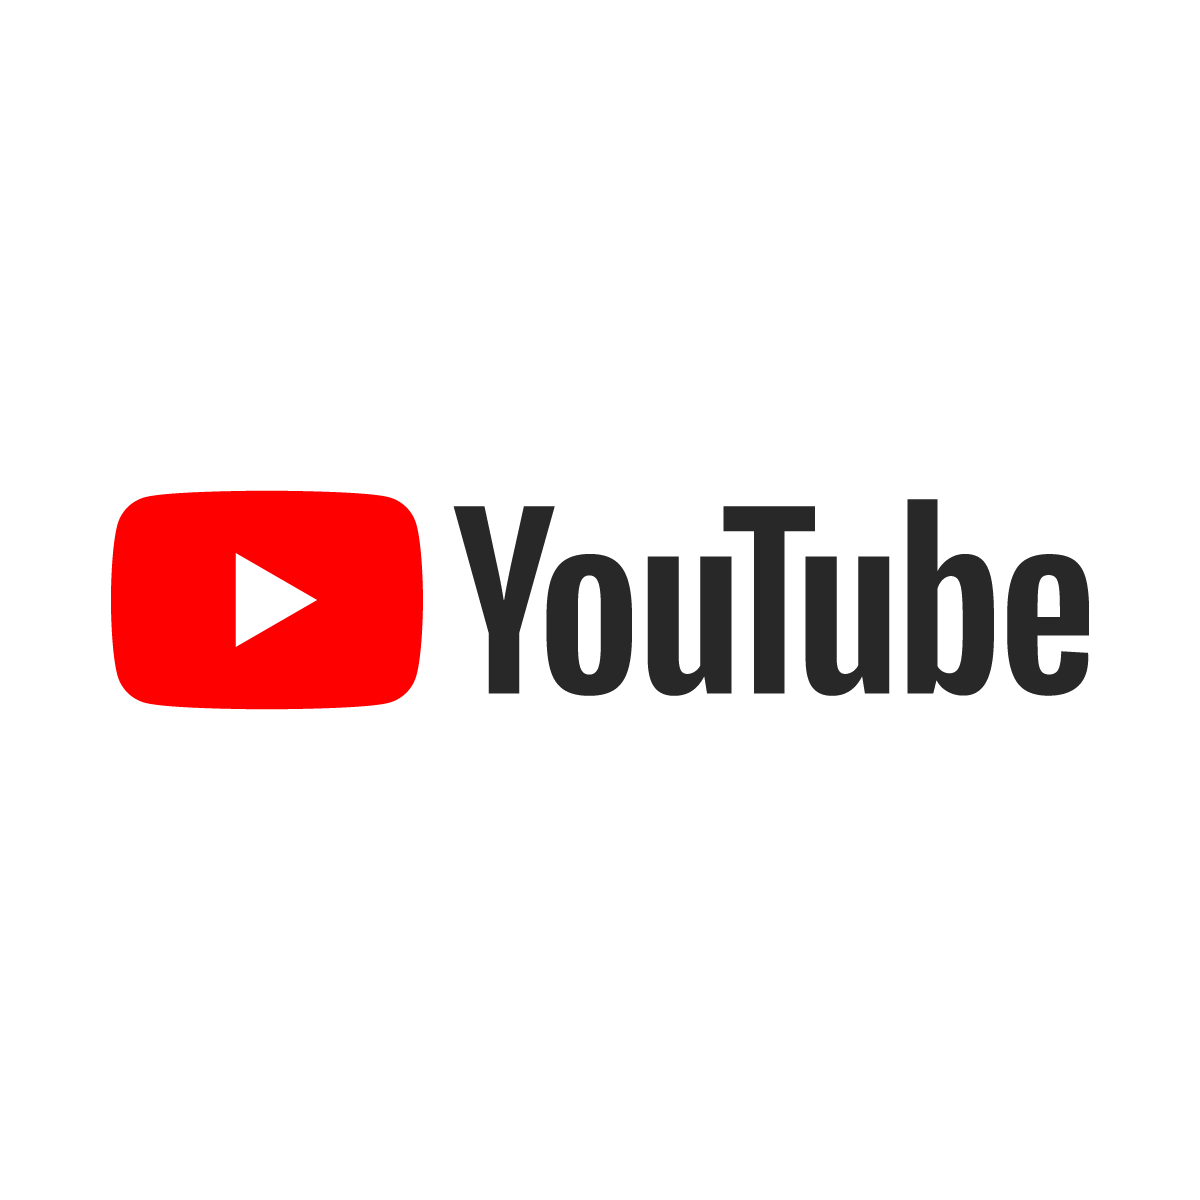 (178) Endlich: Bundesregierung verbietet die AfD - YouTube